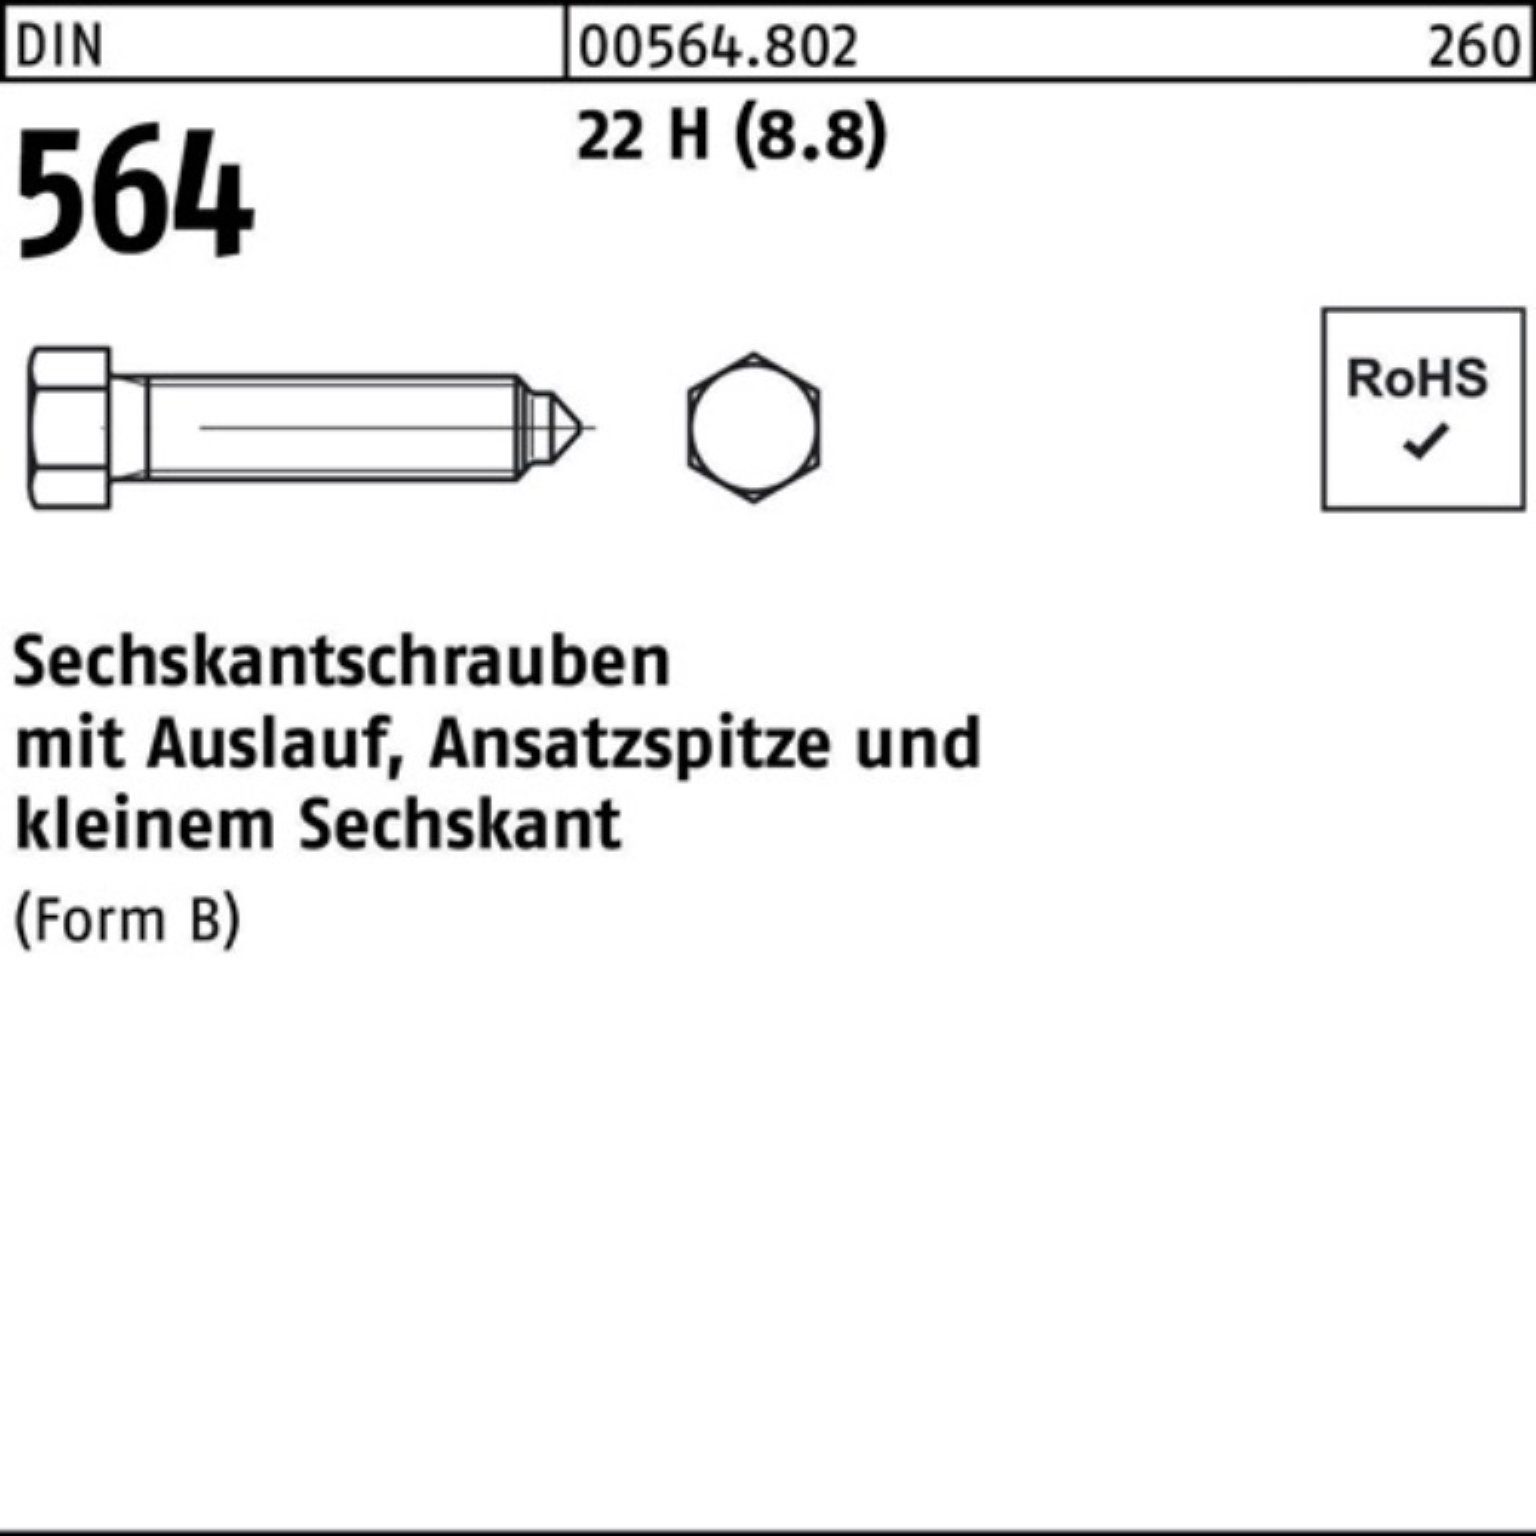 DIN Pack 22 Reyher 40 BM Sechskantschraube Ansatzspitze/Auslauf 10x 100er Sechskantschraube 564